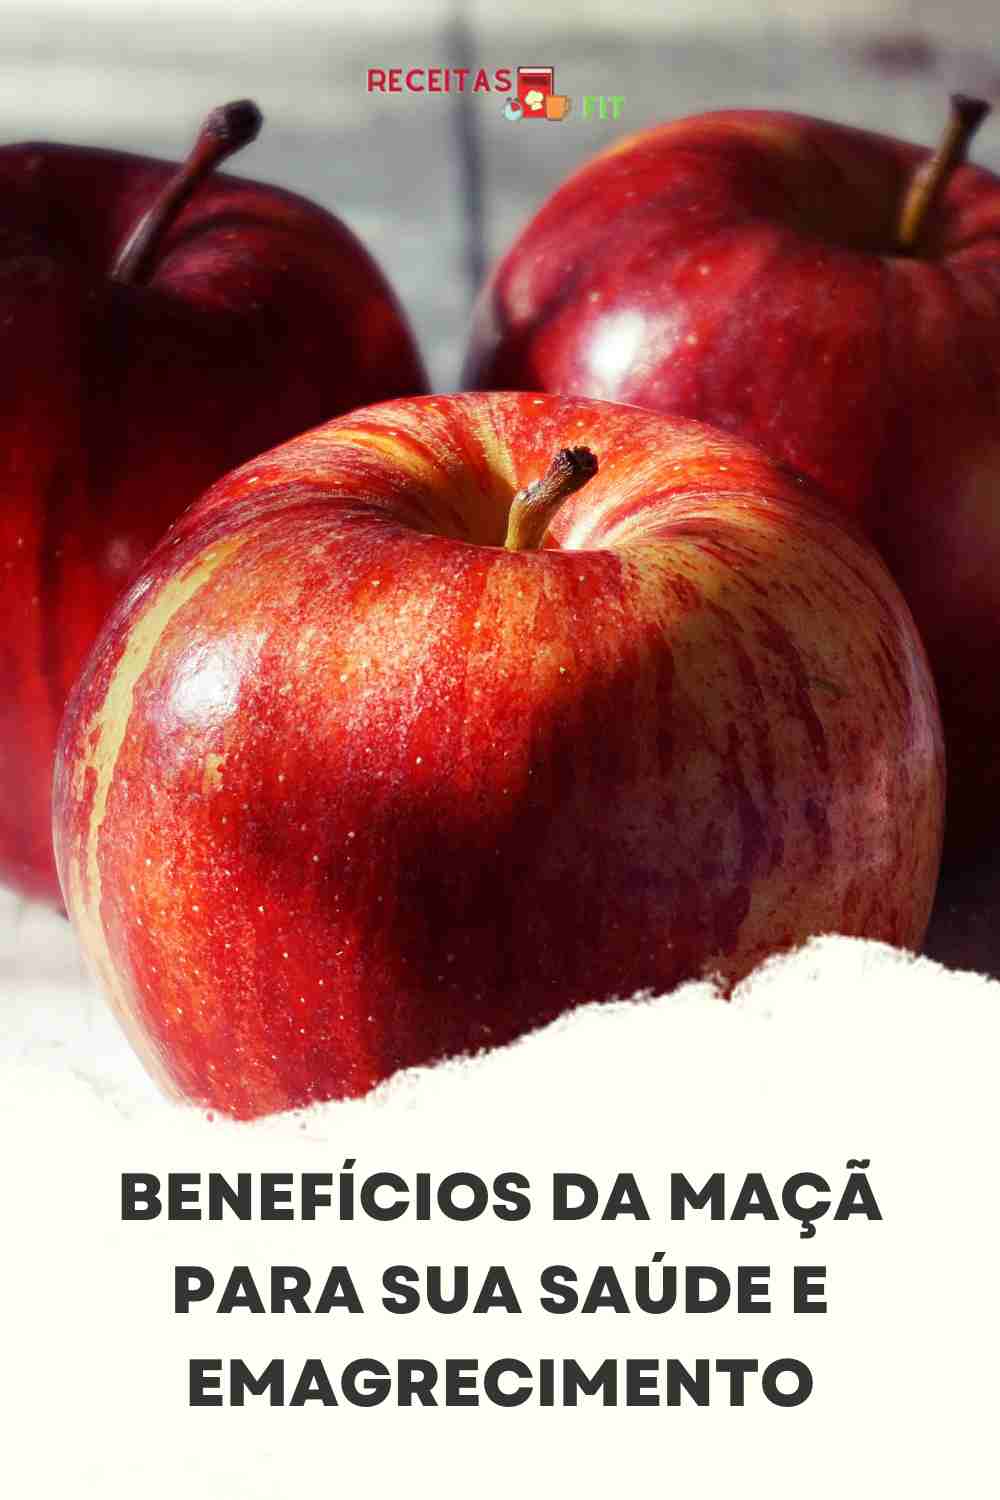 You are currently viewing Benefícios da maçã para sua saúde e emagrecimento